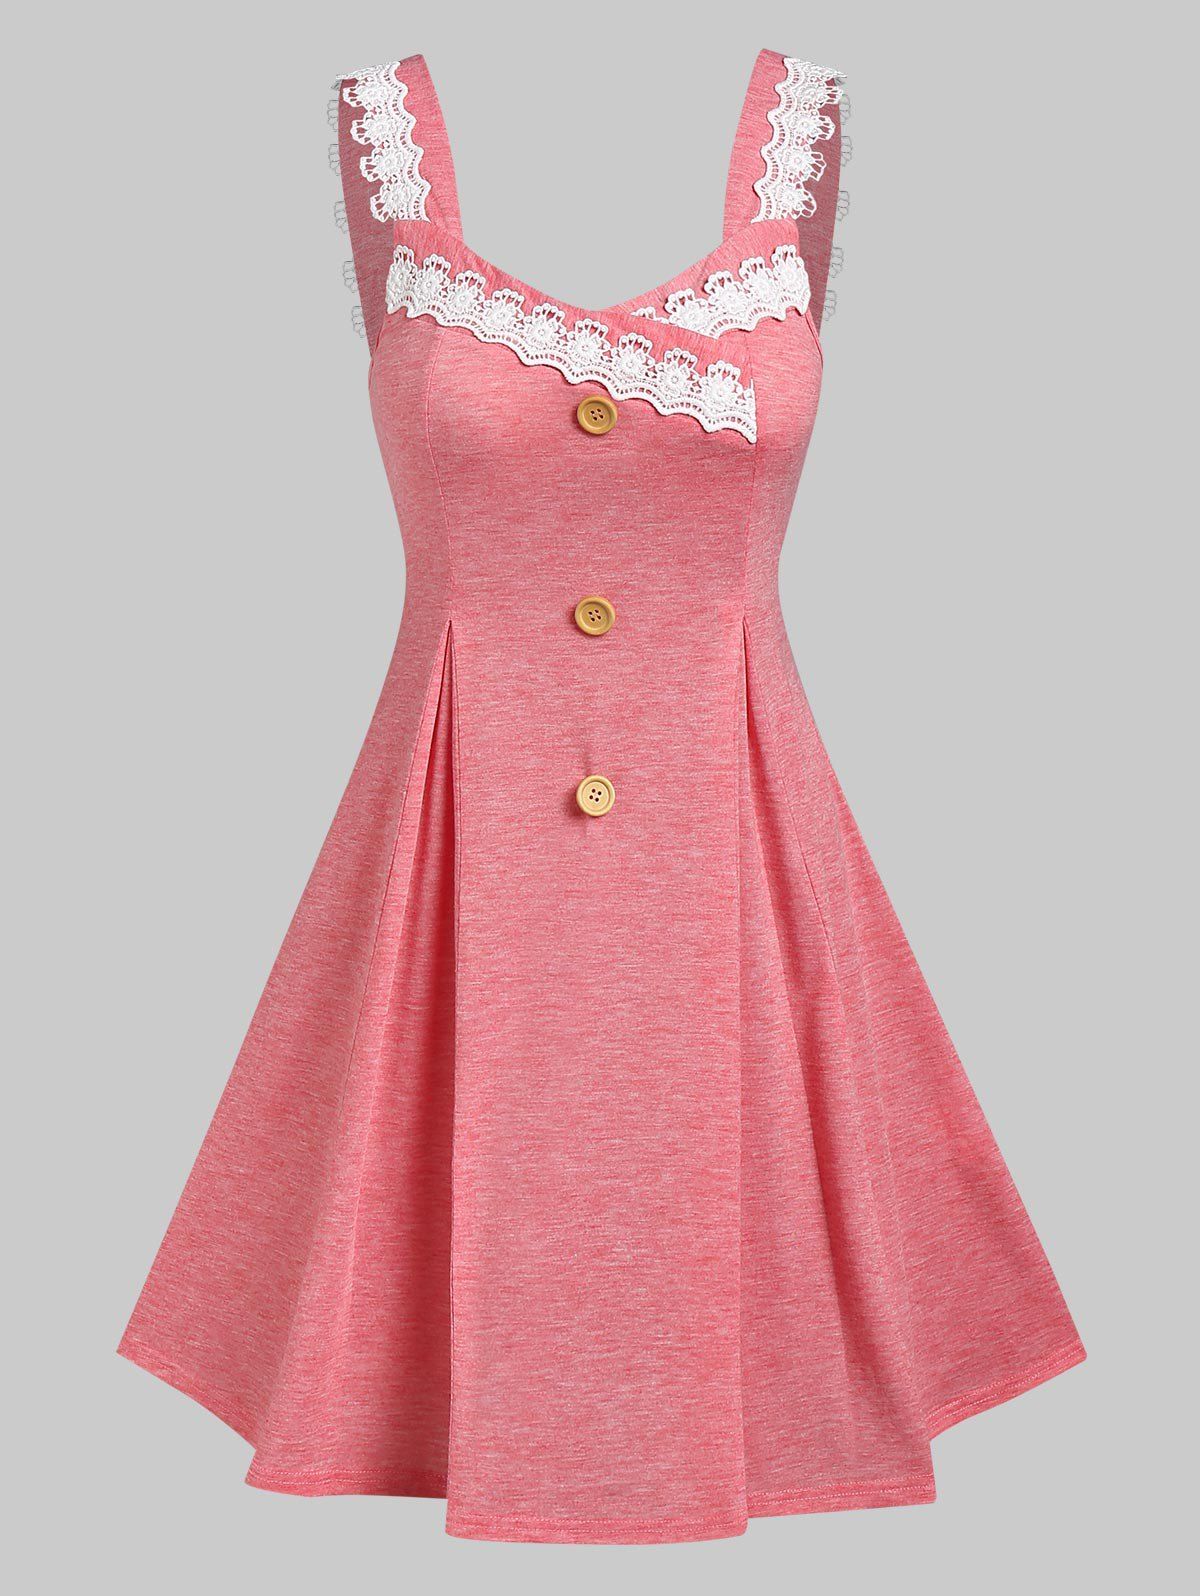 Sleeveless Lace Panel Heathered Dress - LIGHT PINK XL